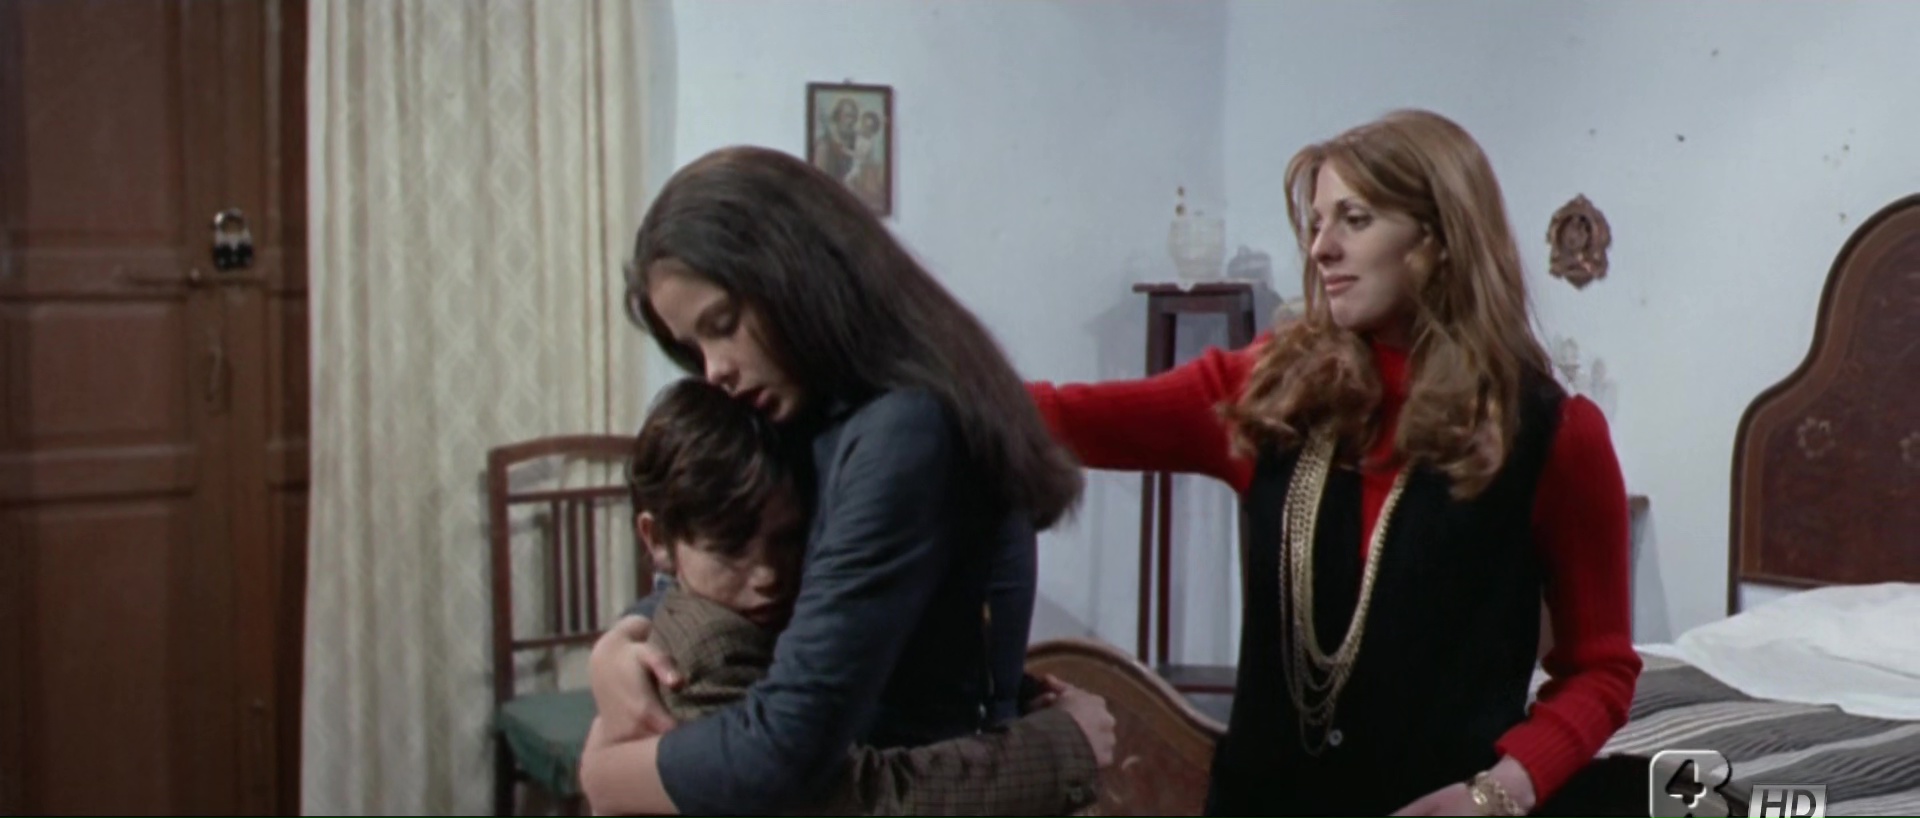 La moglie più bella (1970) 2.jpg